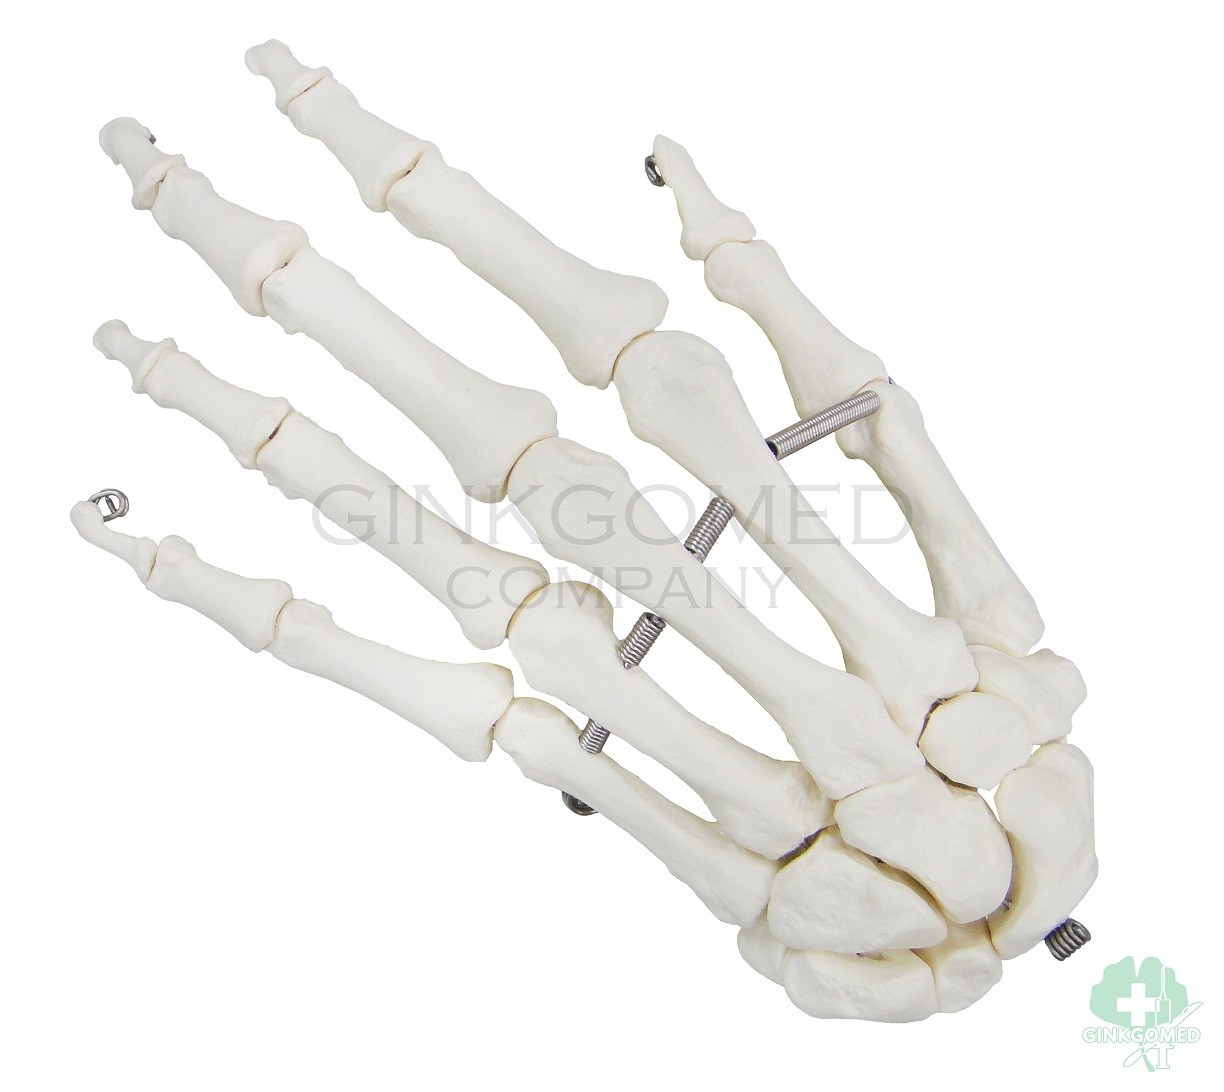 GM-010047 Hand Bones